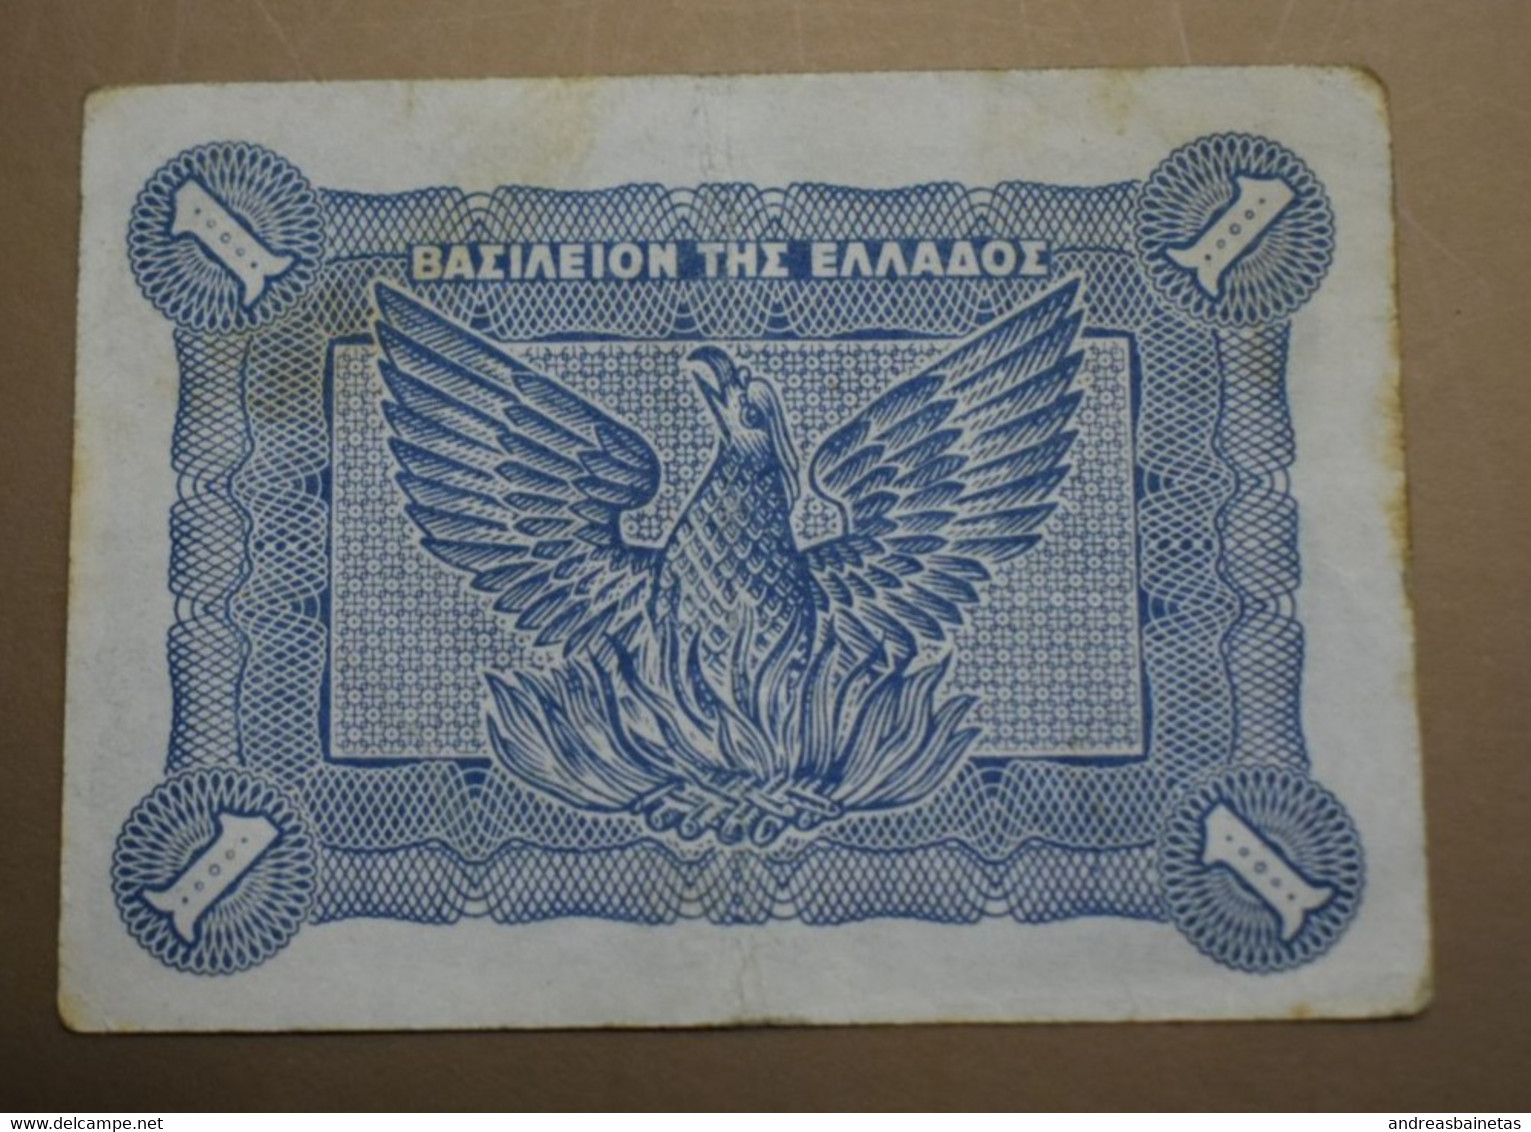 GREECE Banknotes 1 Drachma 1944 VF - Greece